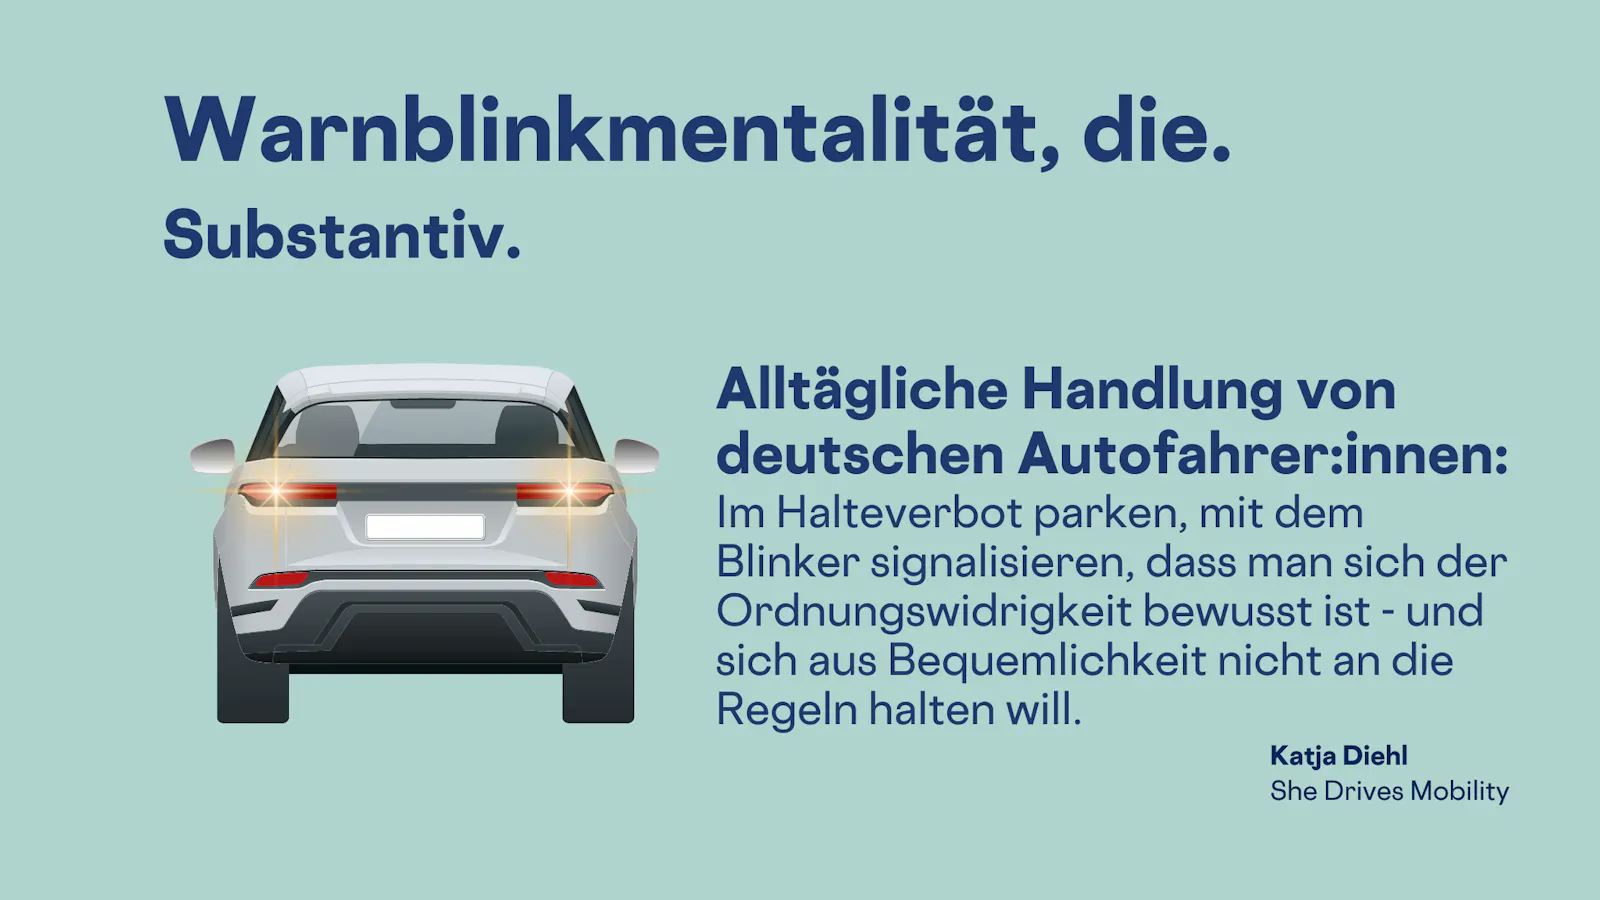 Ein Sharepic, das "Warnblinkmentalität" erklärt. Alltägliche Handlung von deutschen Autofahrer:innen: Im Halteverbot parken, aber das Warnblinklicht anschalten.